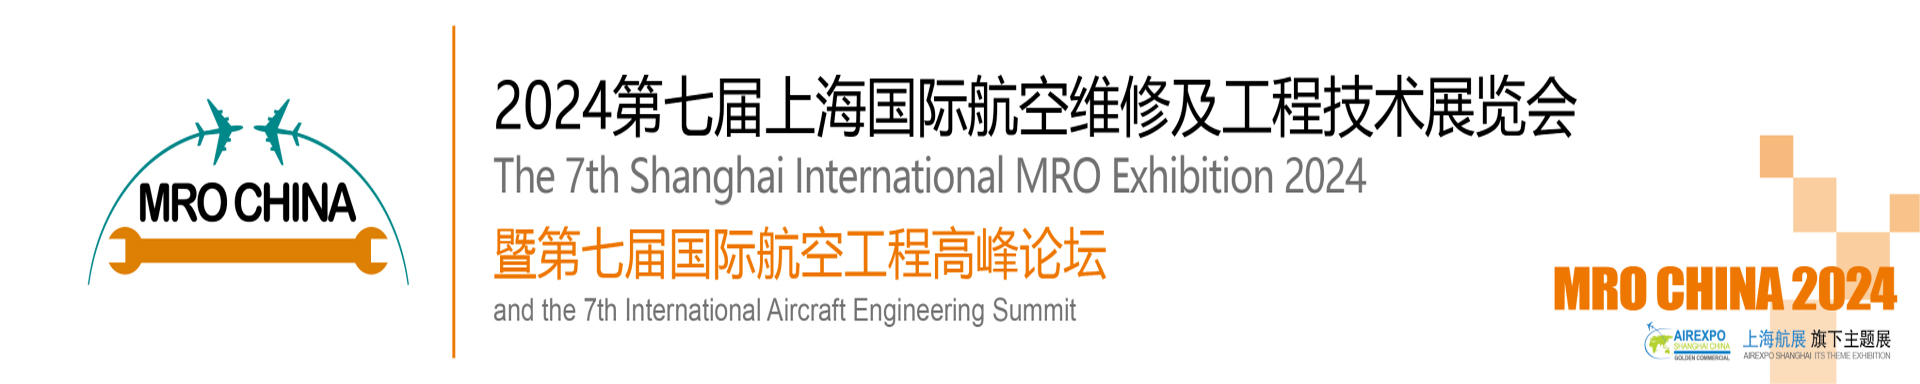 第七届上海国际航空维修及工程技术展览会